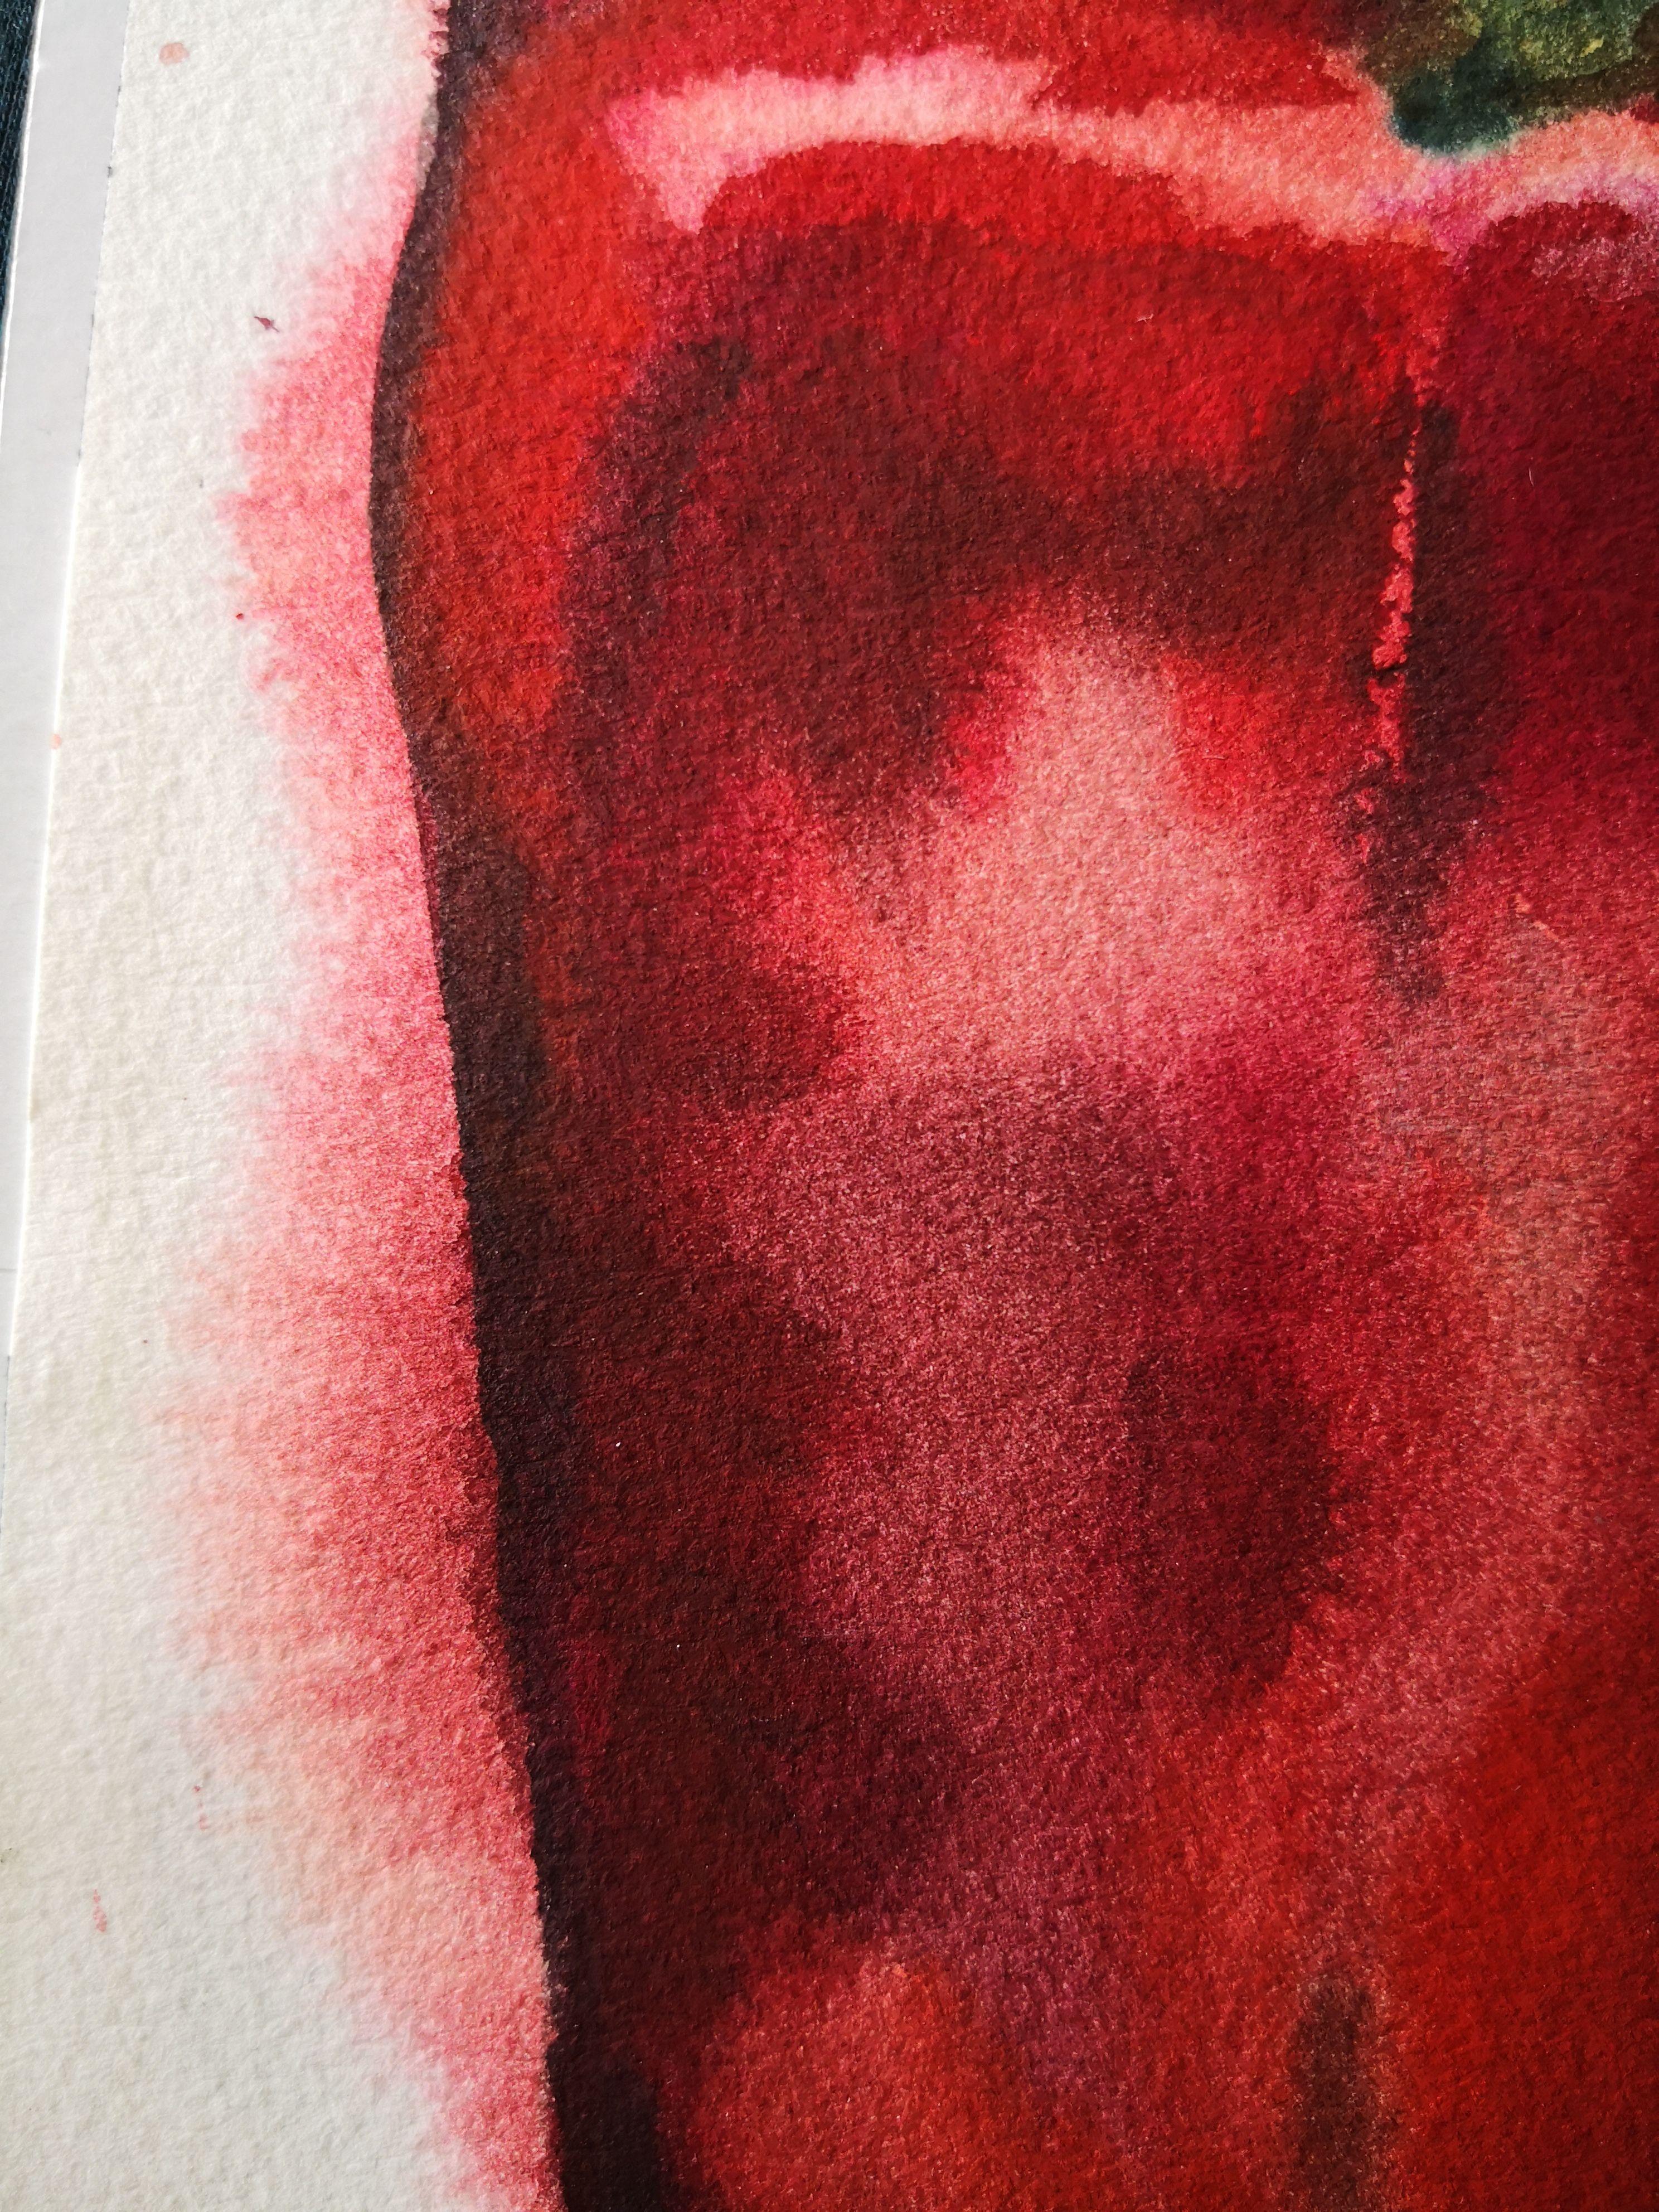 Aquarell auf einem Papier von Archivqualität, Arches 300g/m. Gehört zu einer laufenden Serie über die Lebensmittel, die der Maler isst. Sie mag das tiefe, satte Rot und die glänzende Textur dieser roten Paprika. :: Malerei :: Expressionismus ::